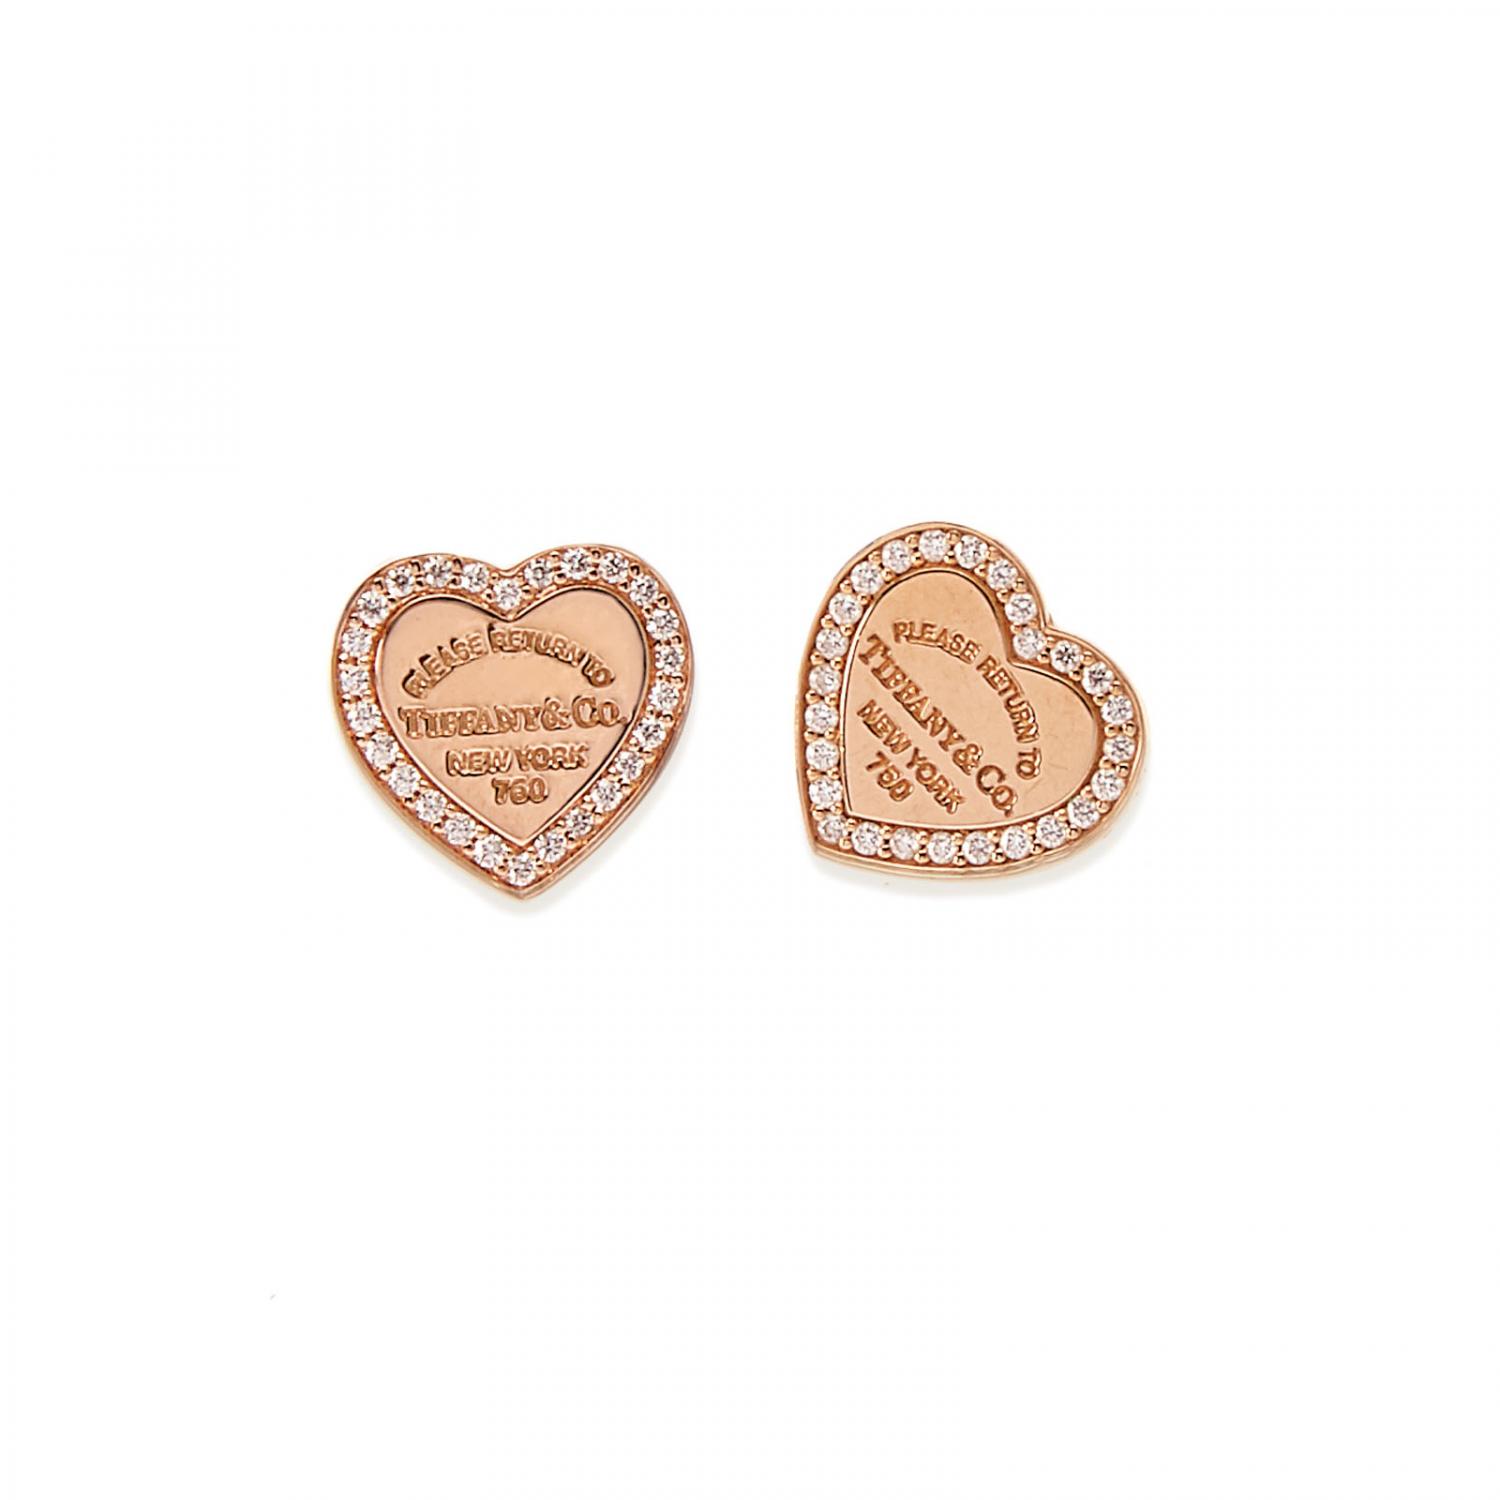 Tiffany diamond heart earrings, Tiffany 